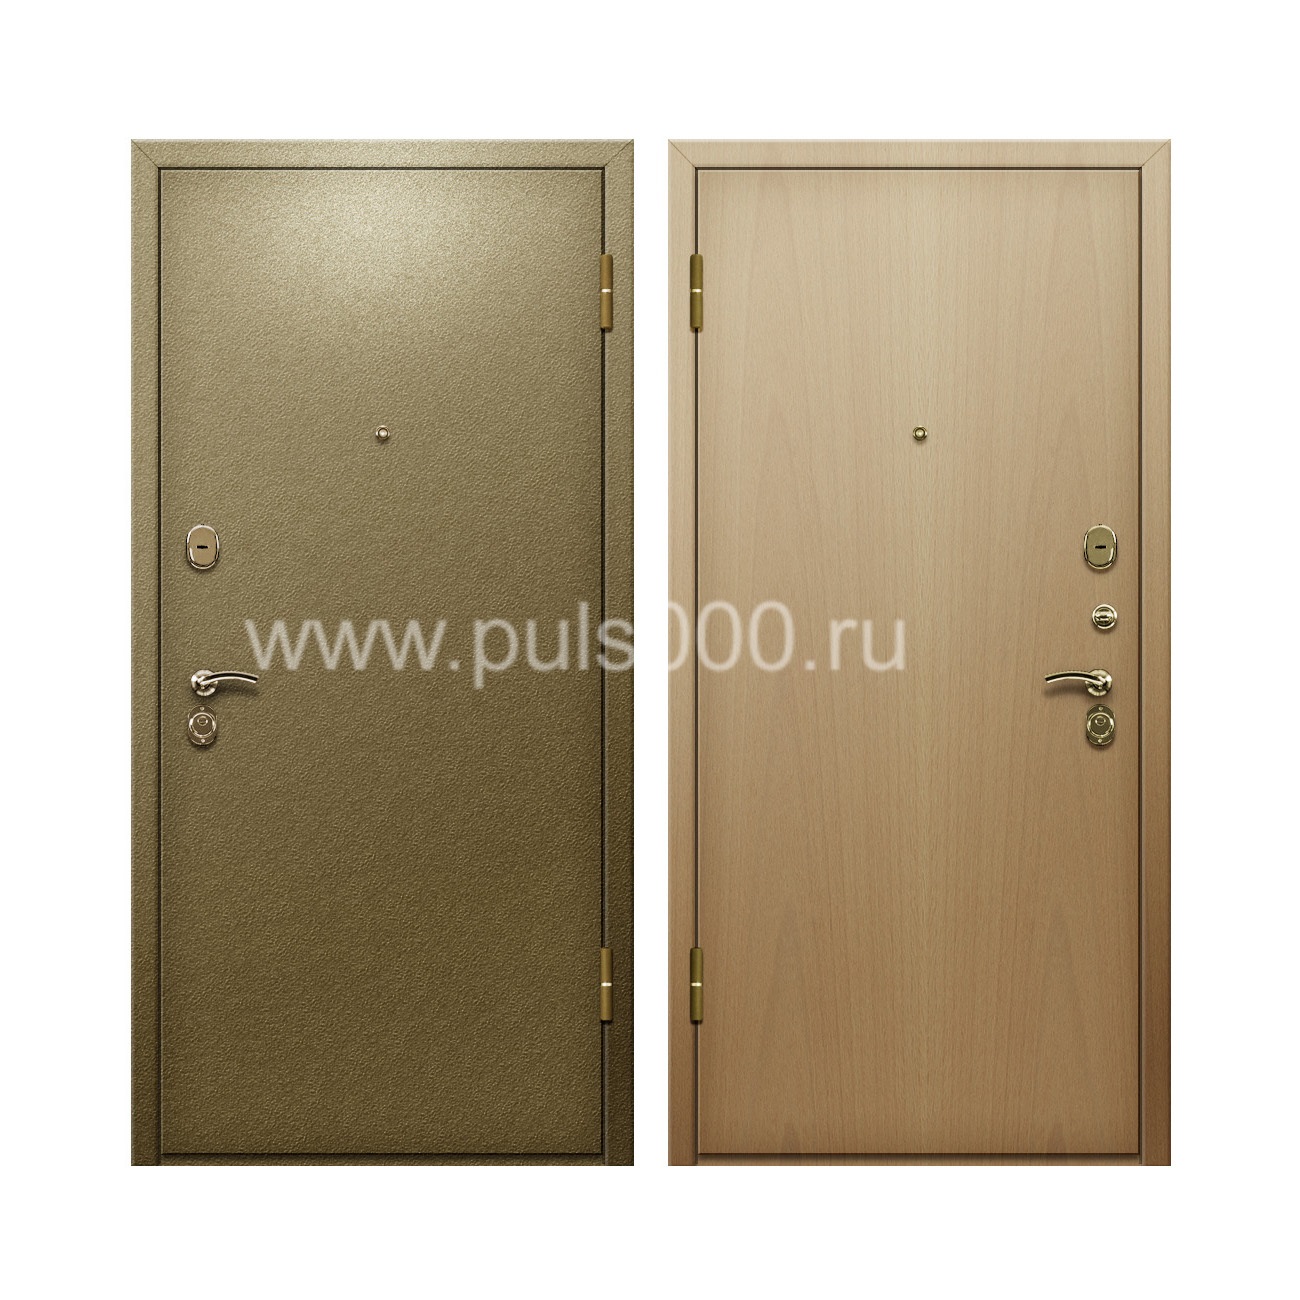 Входная дверь темный порошок и ламинат внутри PR-61, цена 20 000  руб.